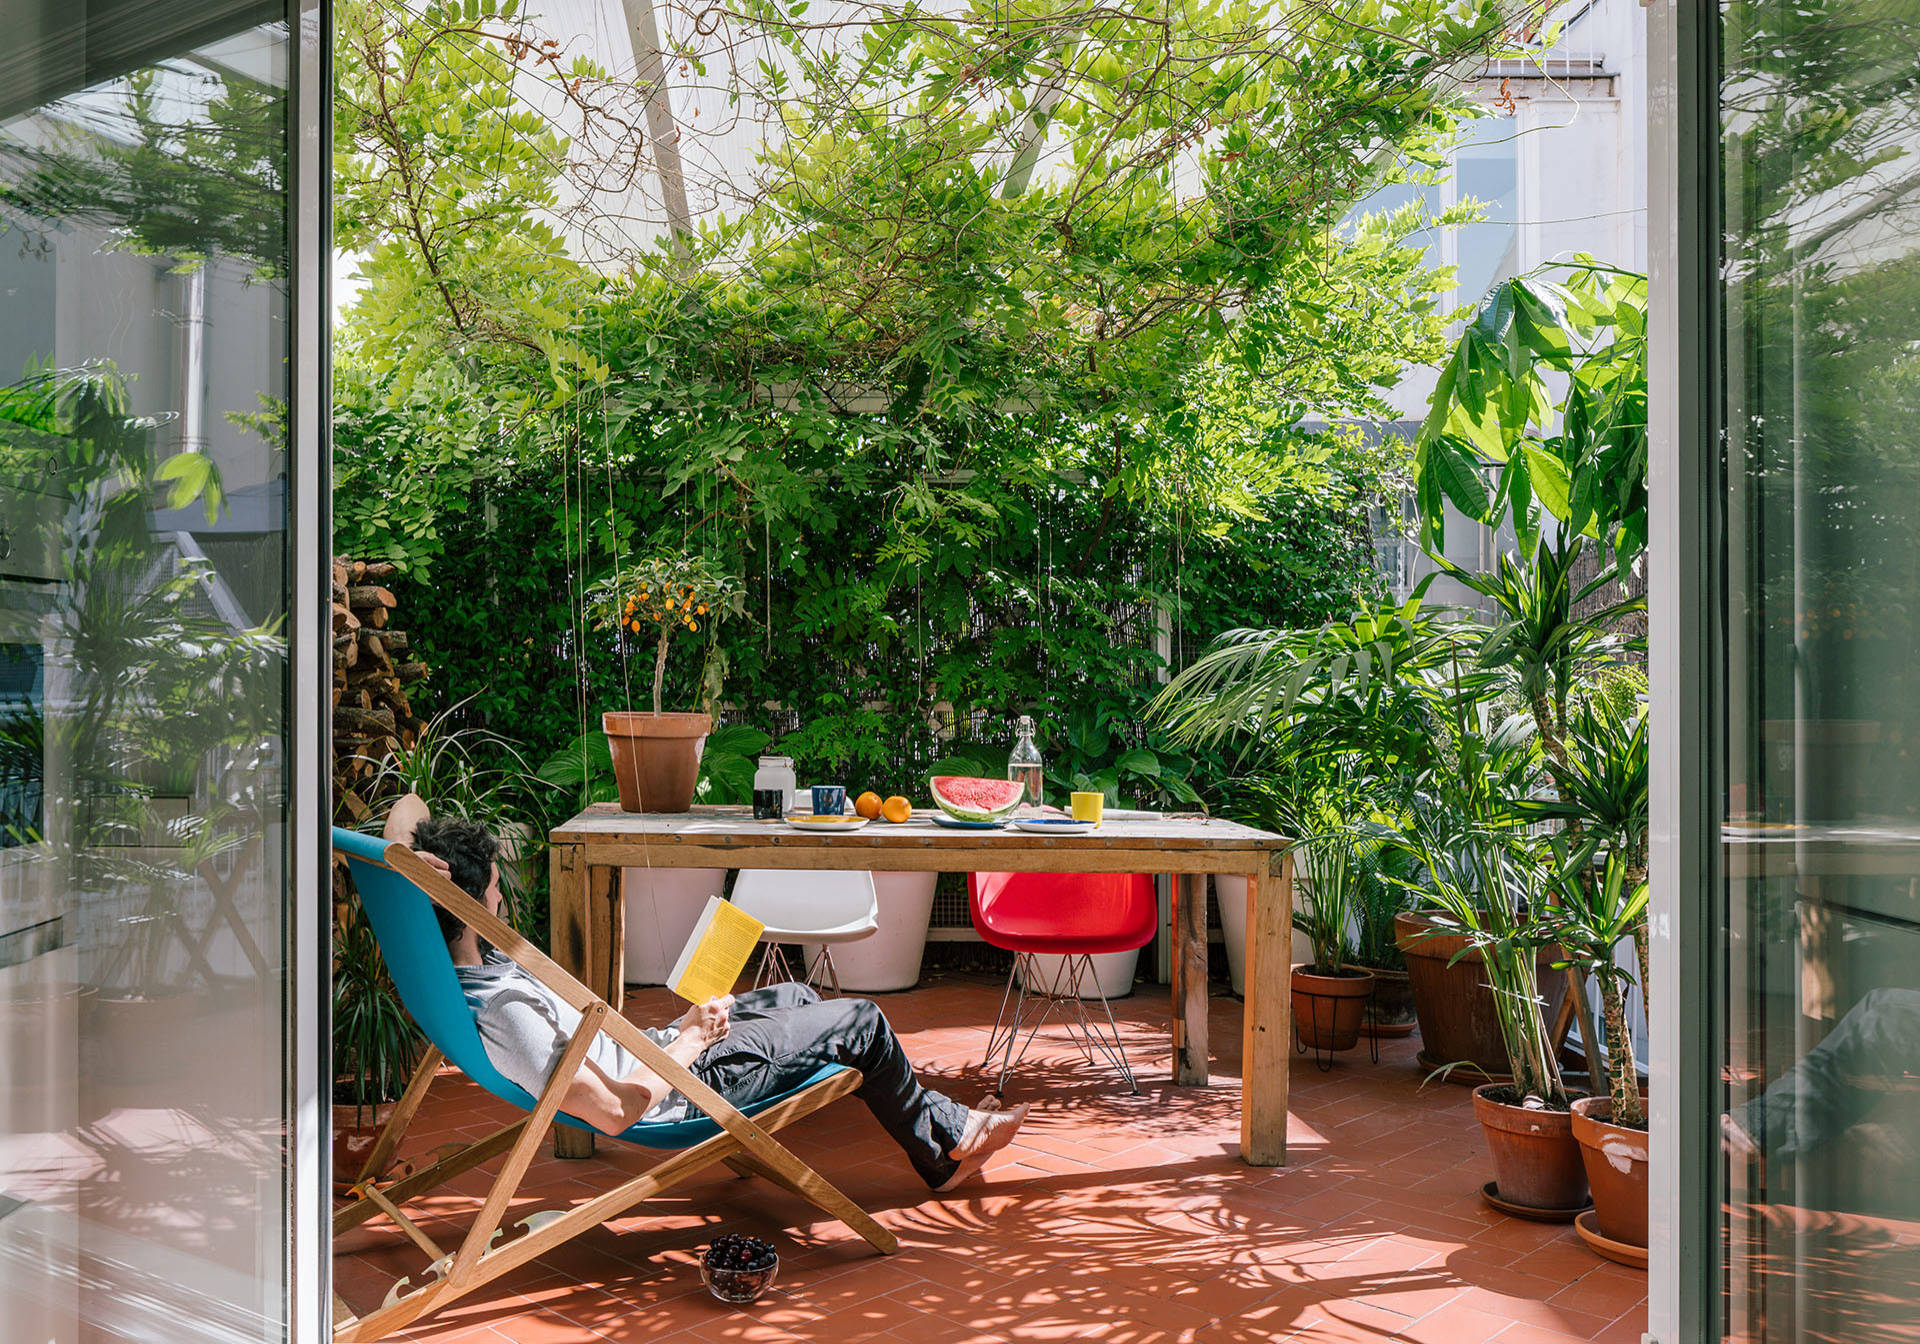 Die besten Sichtschutzpflanzen für Garten und Balkon